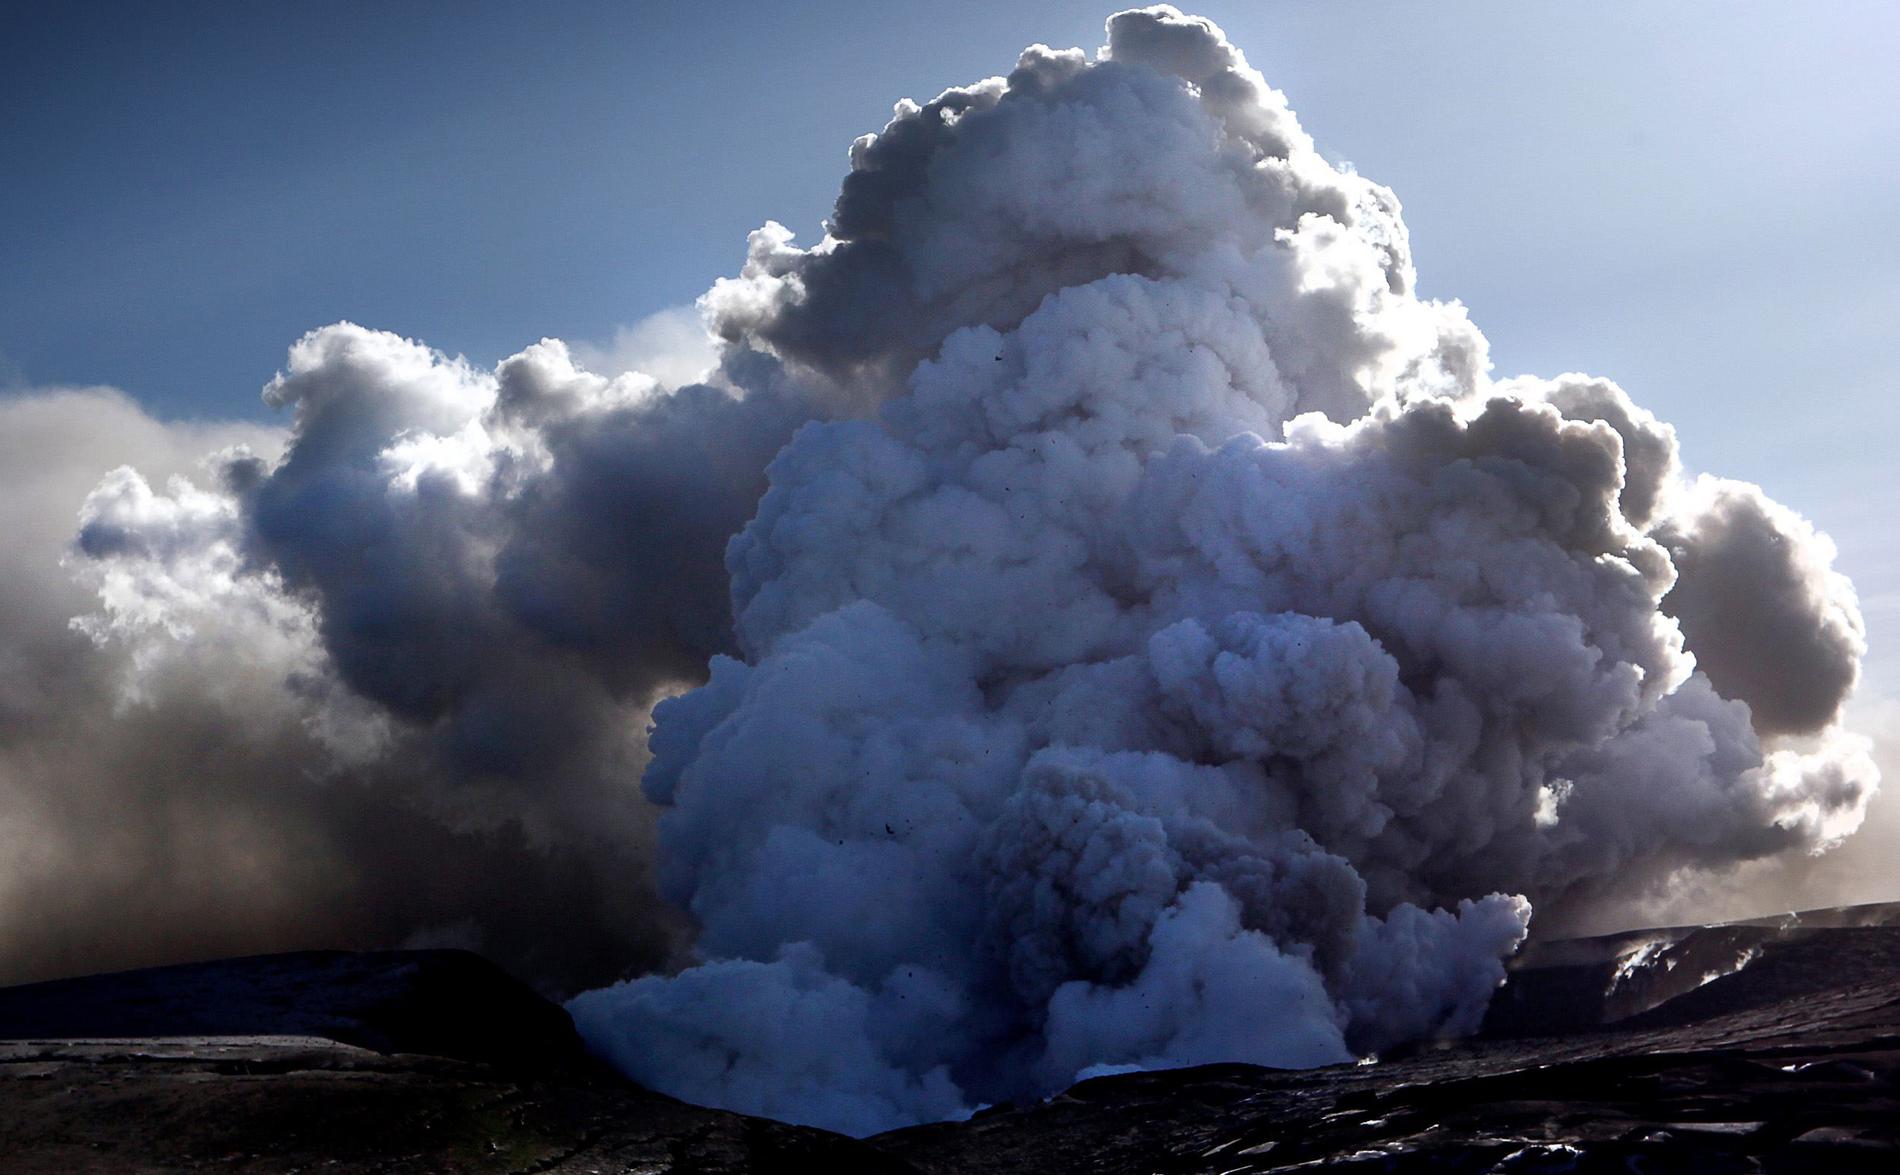 Vulkanen Eyjafjallajökull, som ligger tolv mil öster om Reykjavik på Island, fick natten mellan den 14 och 15 april 2010 ett större utbrott. Askmolnet från vulkanen spreds över Europa och all flygtrafik har fått ställas in. Men svenskarna behöver inte oroa sig för att askan ska skada deras hälsa, menar experter.